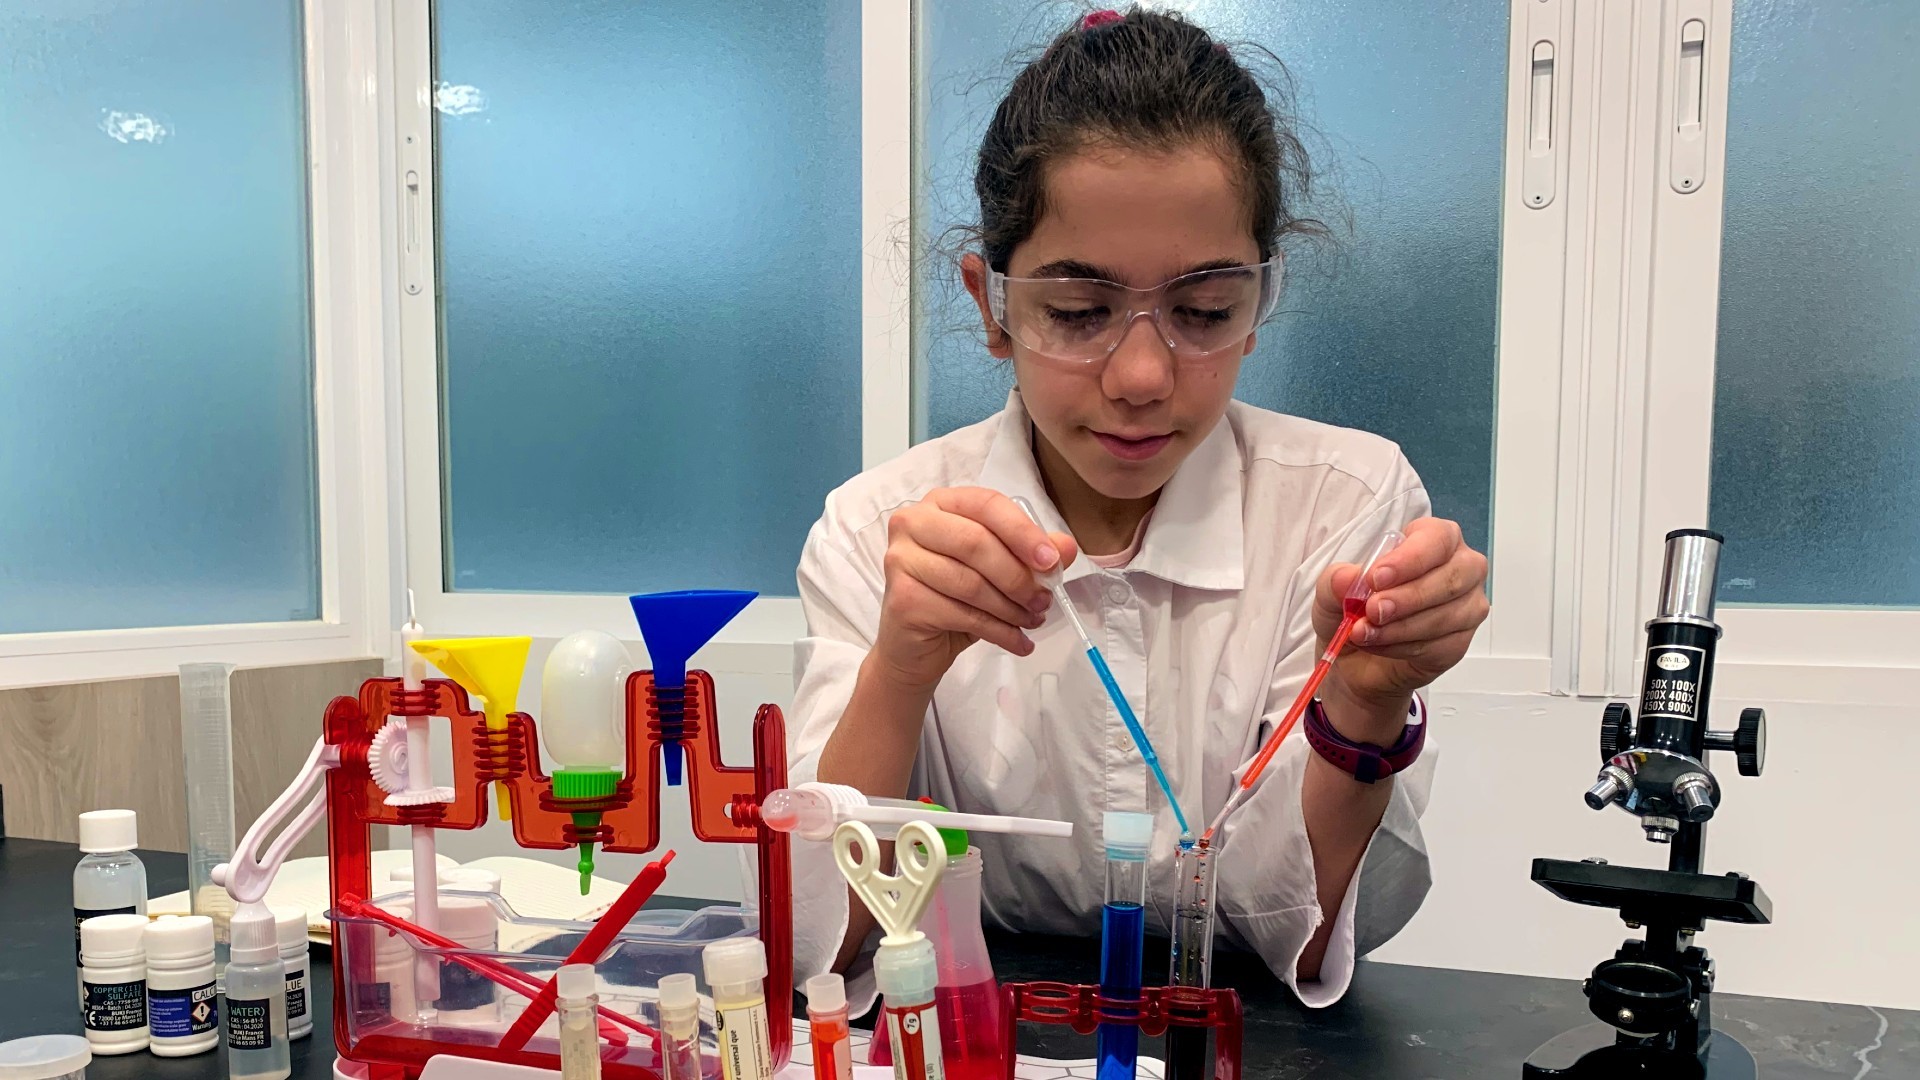 Pastora Torrero, tiene 11 años y tiene claro que quiere ser científica